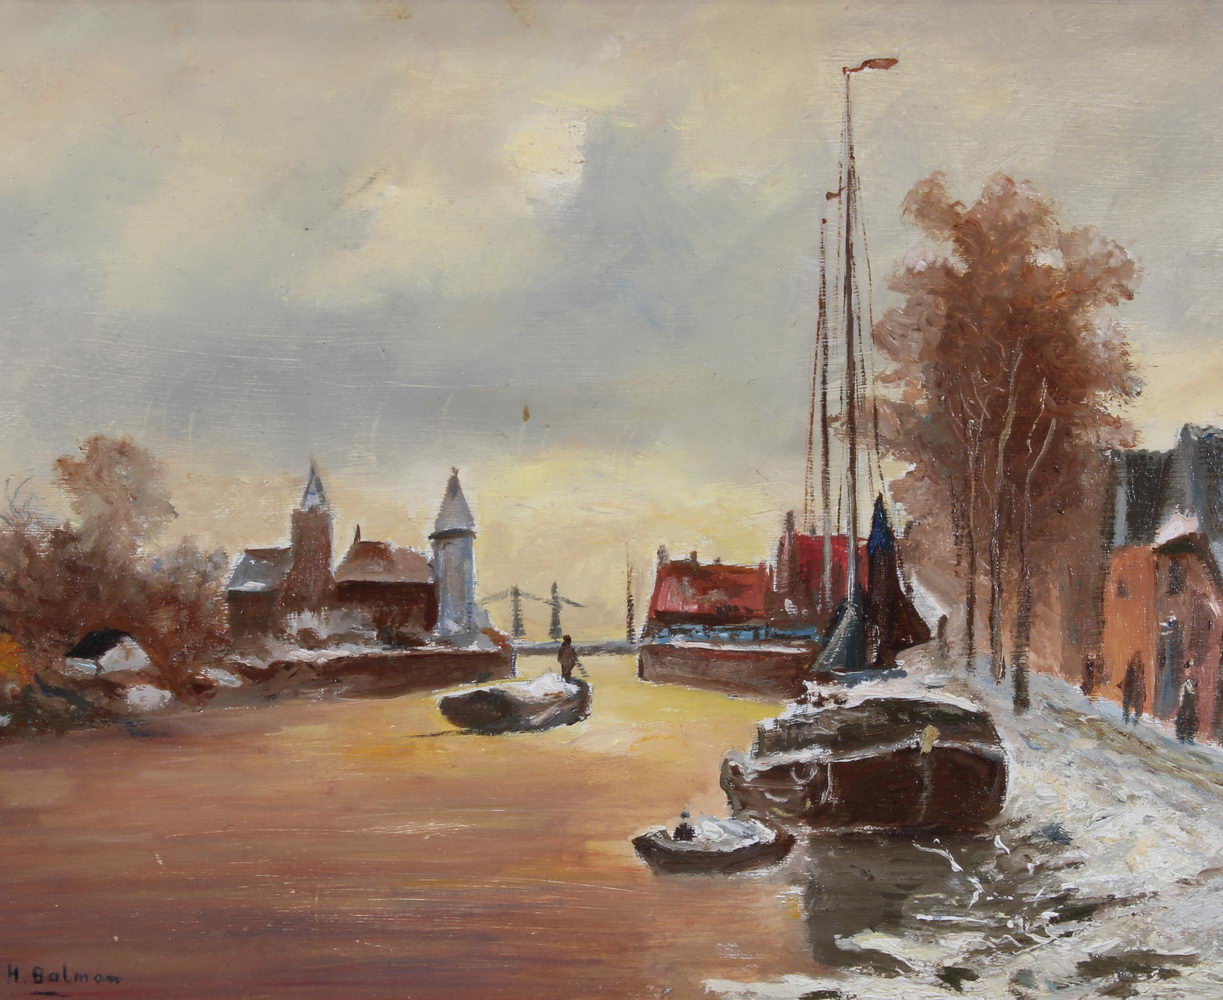 Balman, Hendricus (geb. 1940, holländischer Maler von Küstenlandschaften), "An einem niederländi